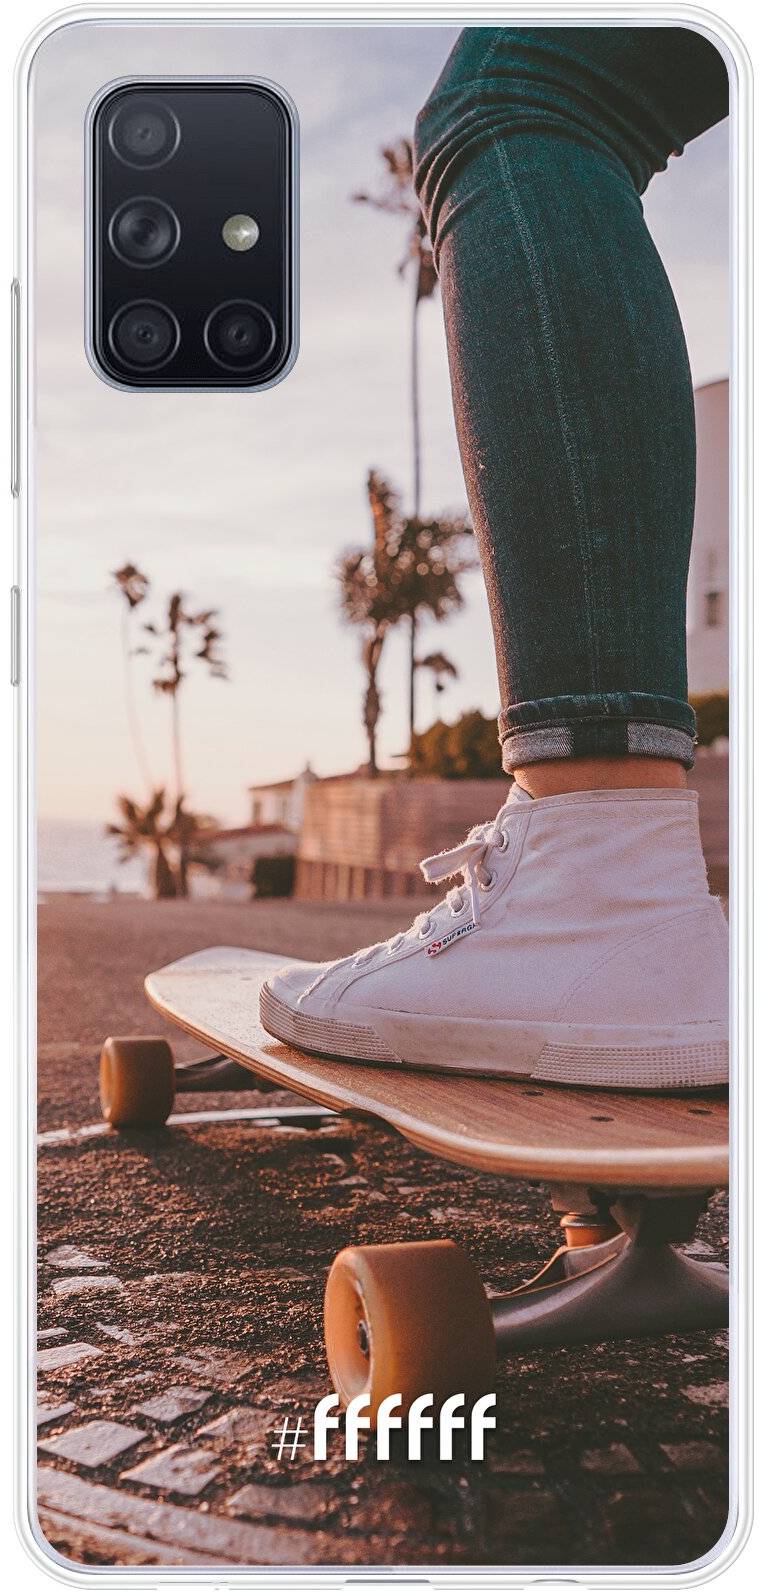 Skateboarding Galaxy A71